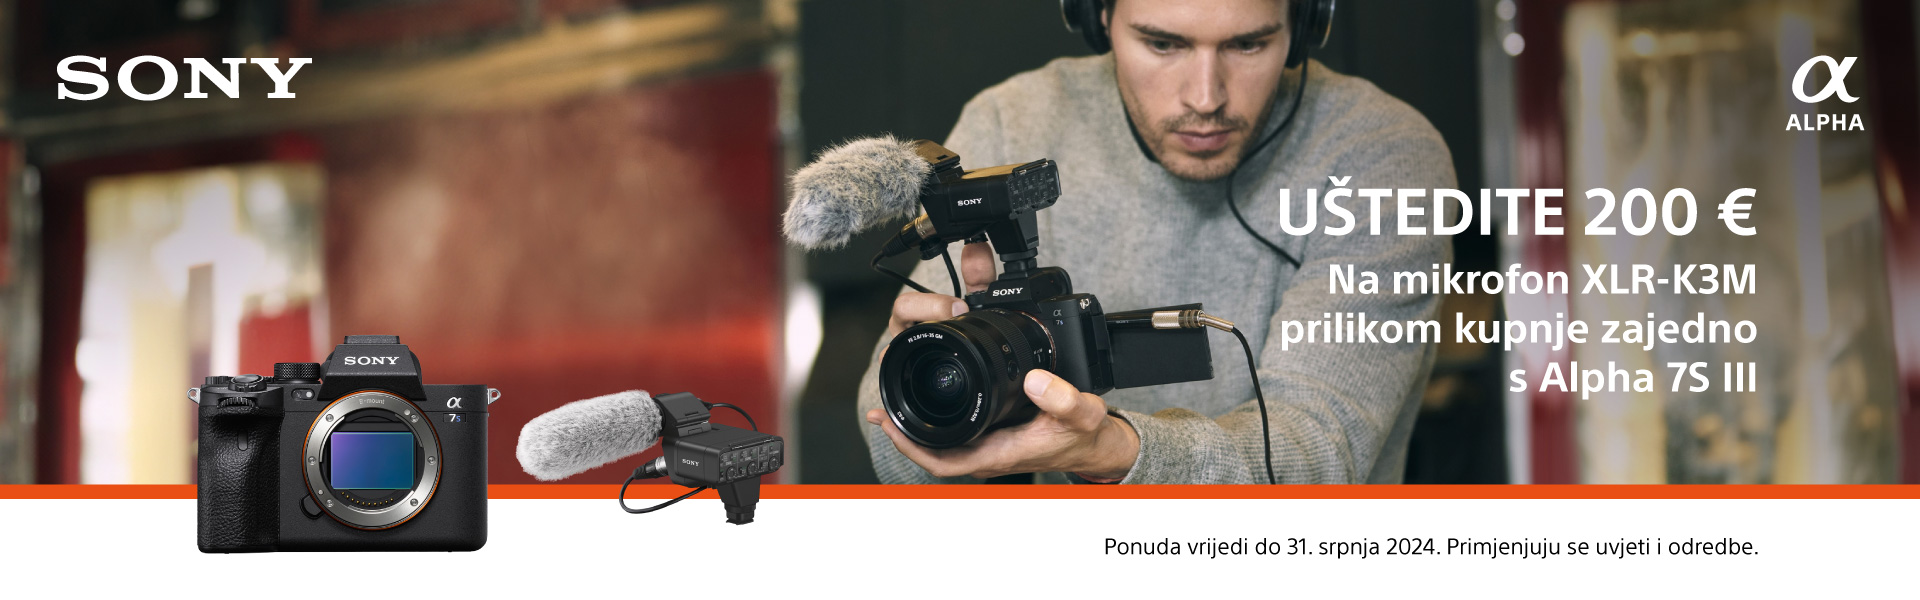 Sony popust Fotoaparat + Mikrofon